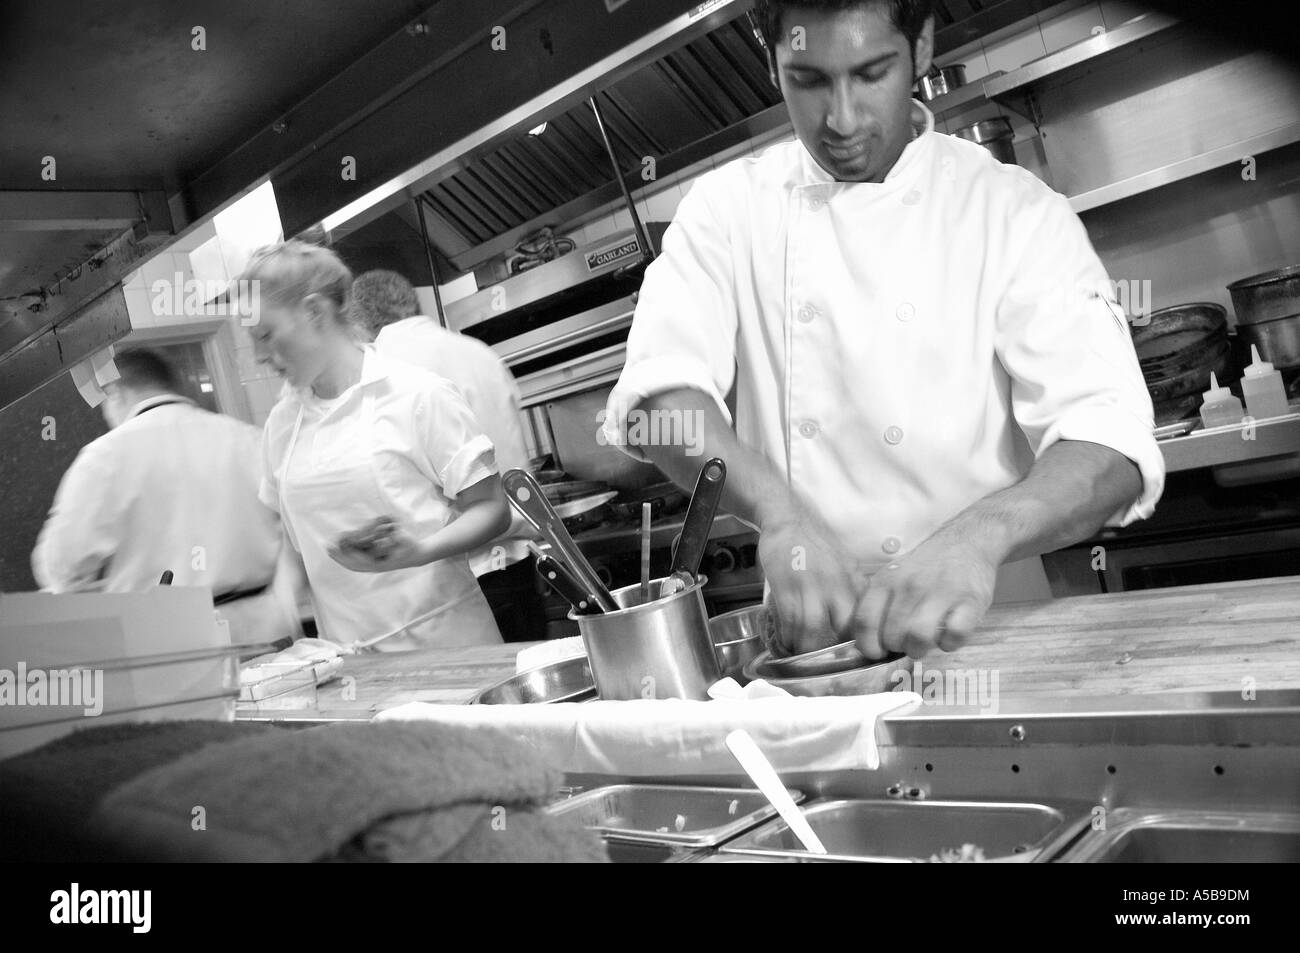 Team von Personal im Restaurant Küche fleißig bei der Arbeit. Stockfoto